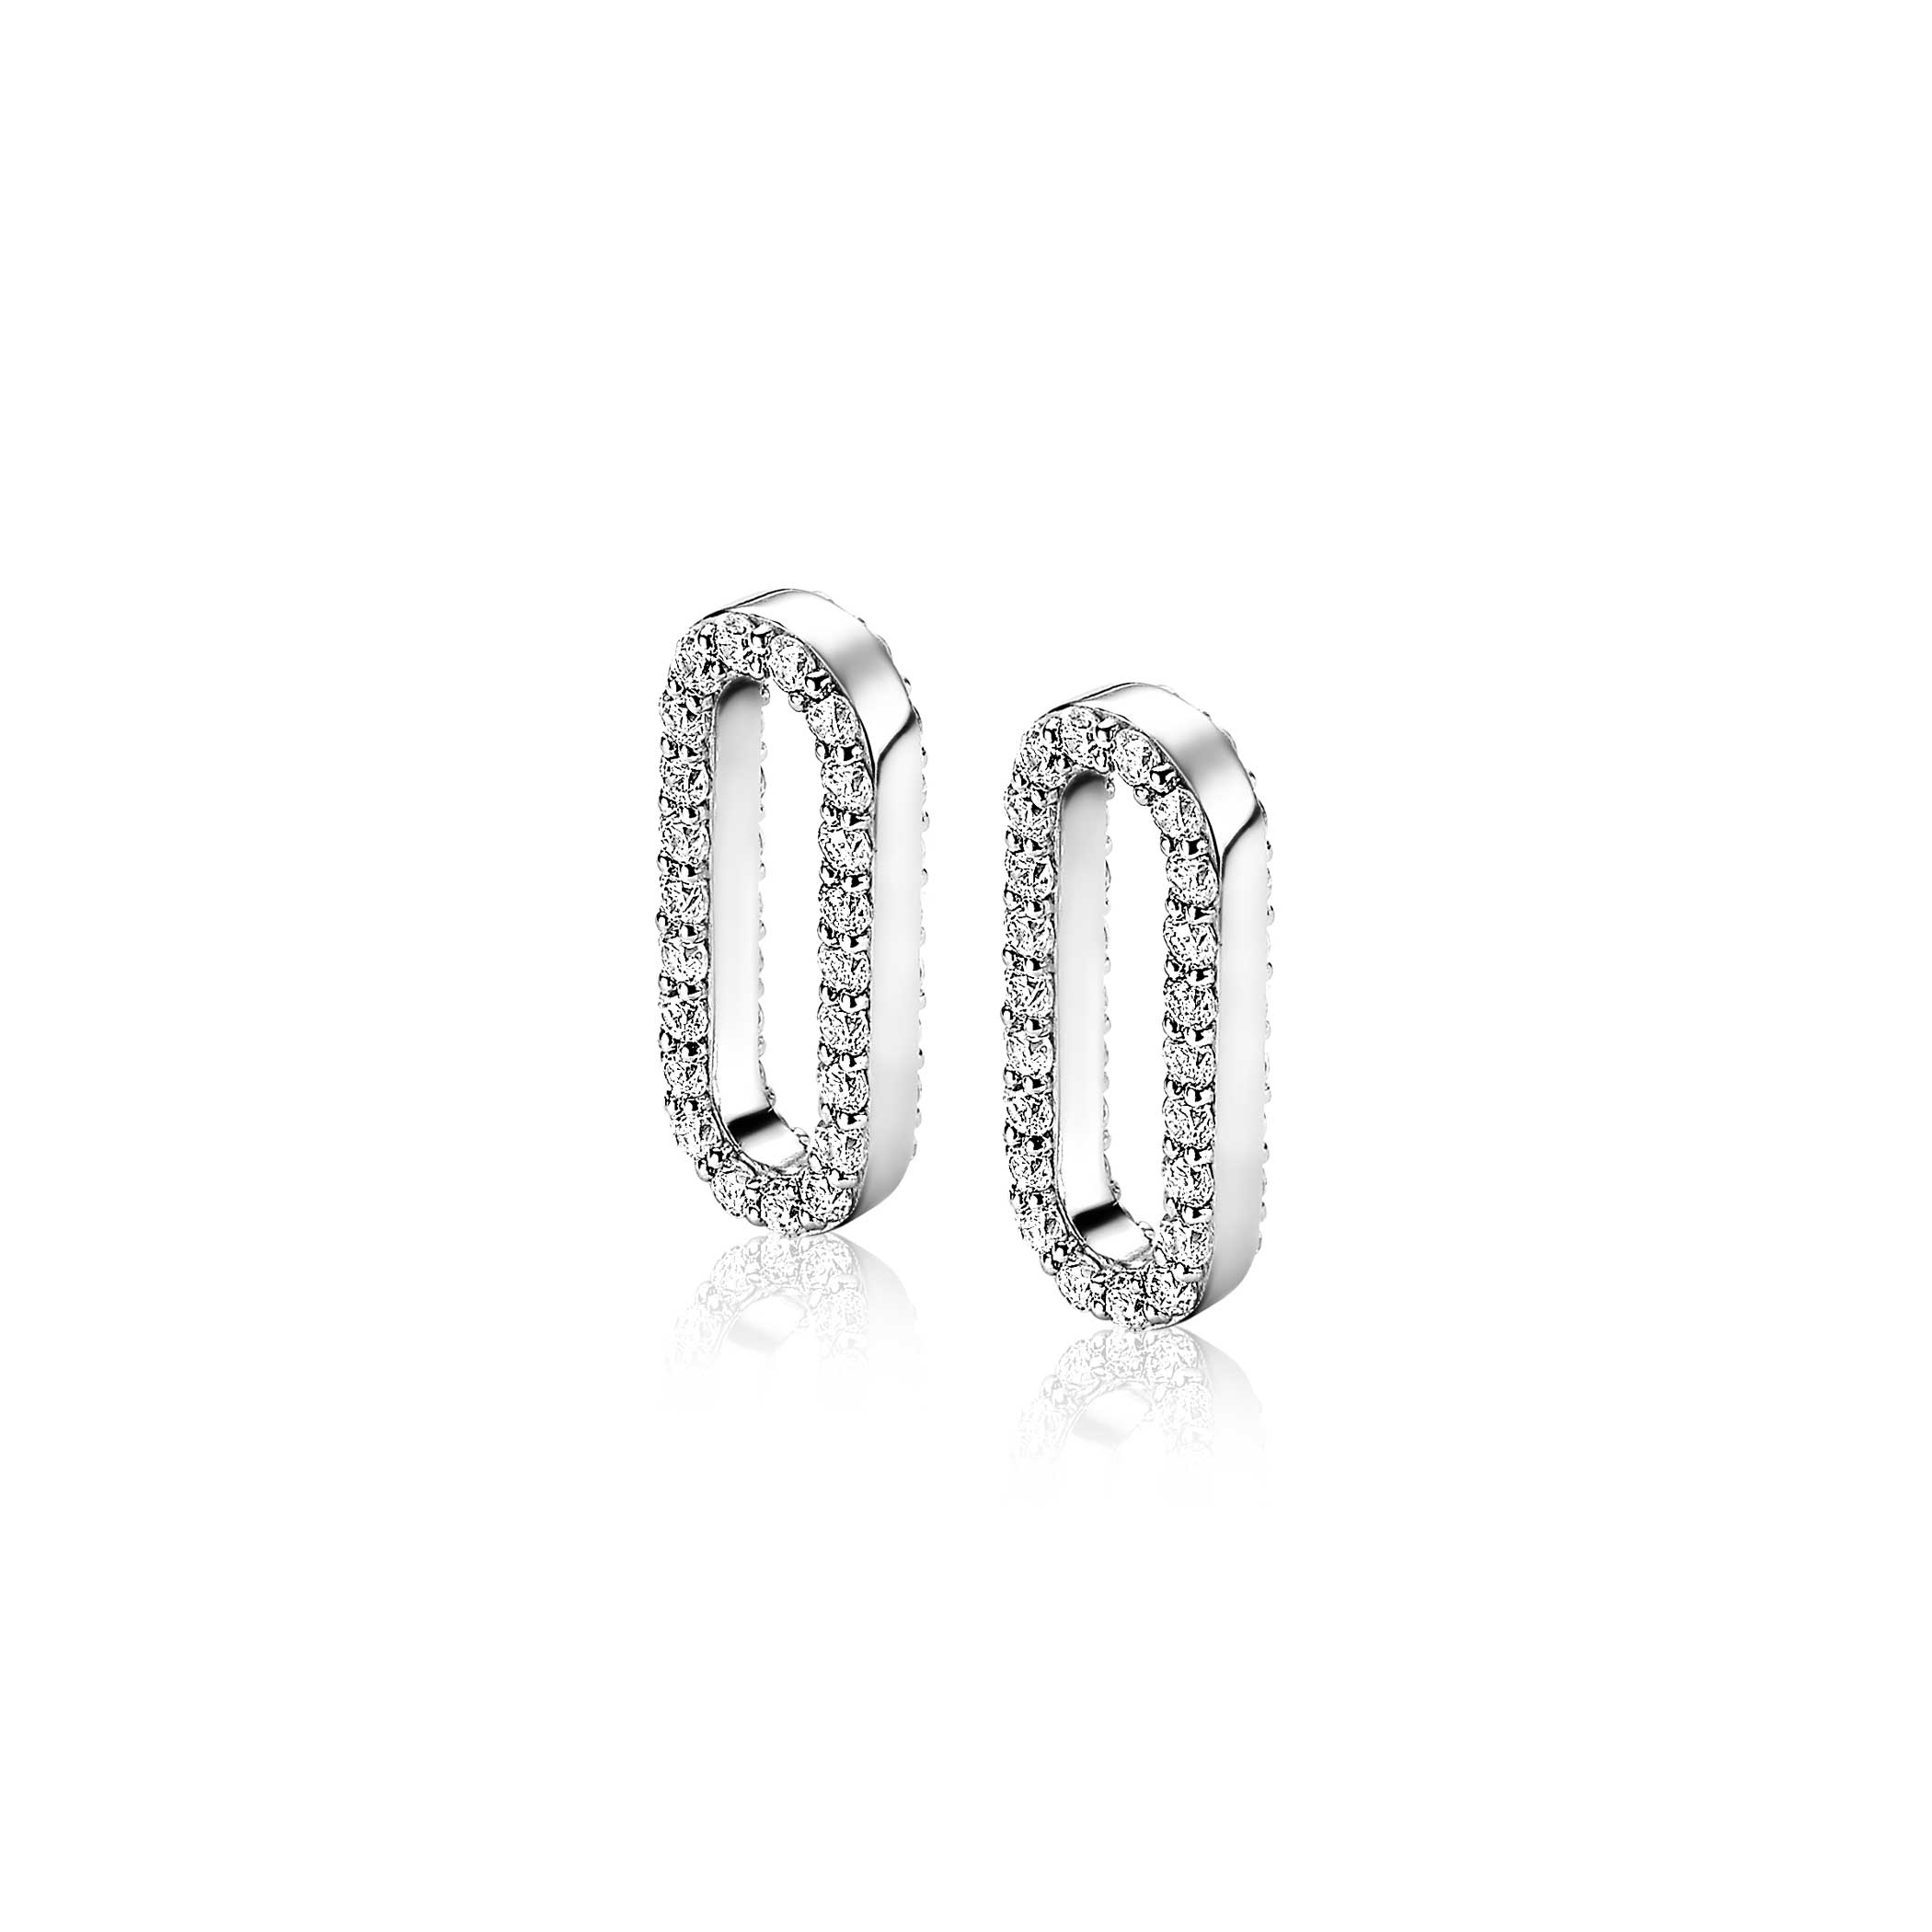 20mm ZINZI Sterling Silver Earrings Pendants Oval White Zirconia ZICH2156 (excl. hoop earrings)